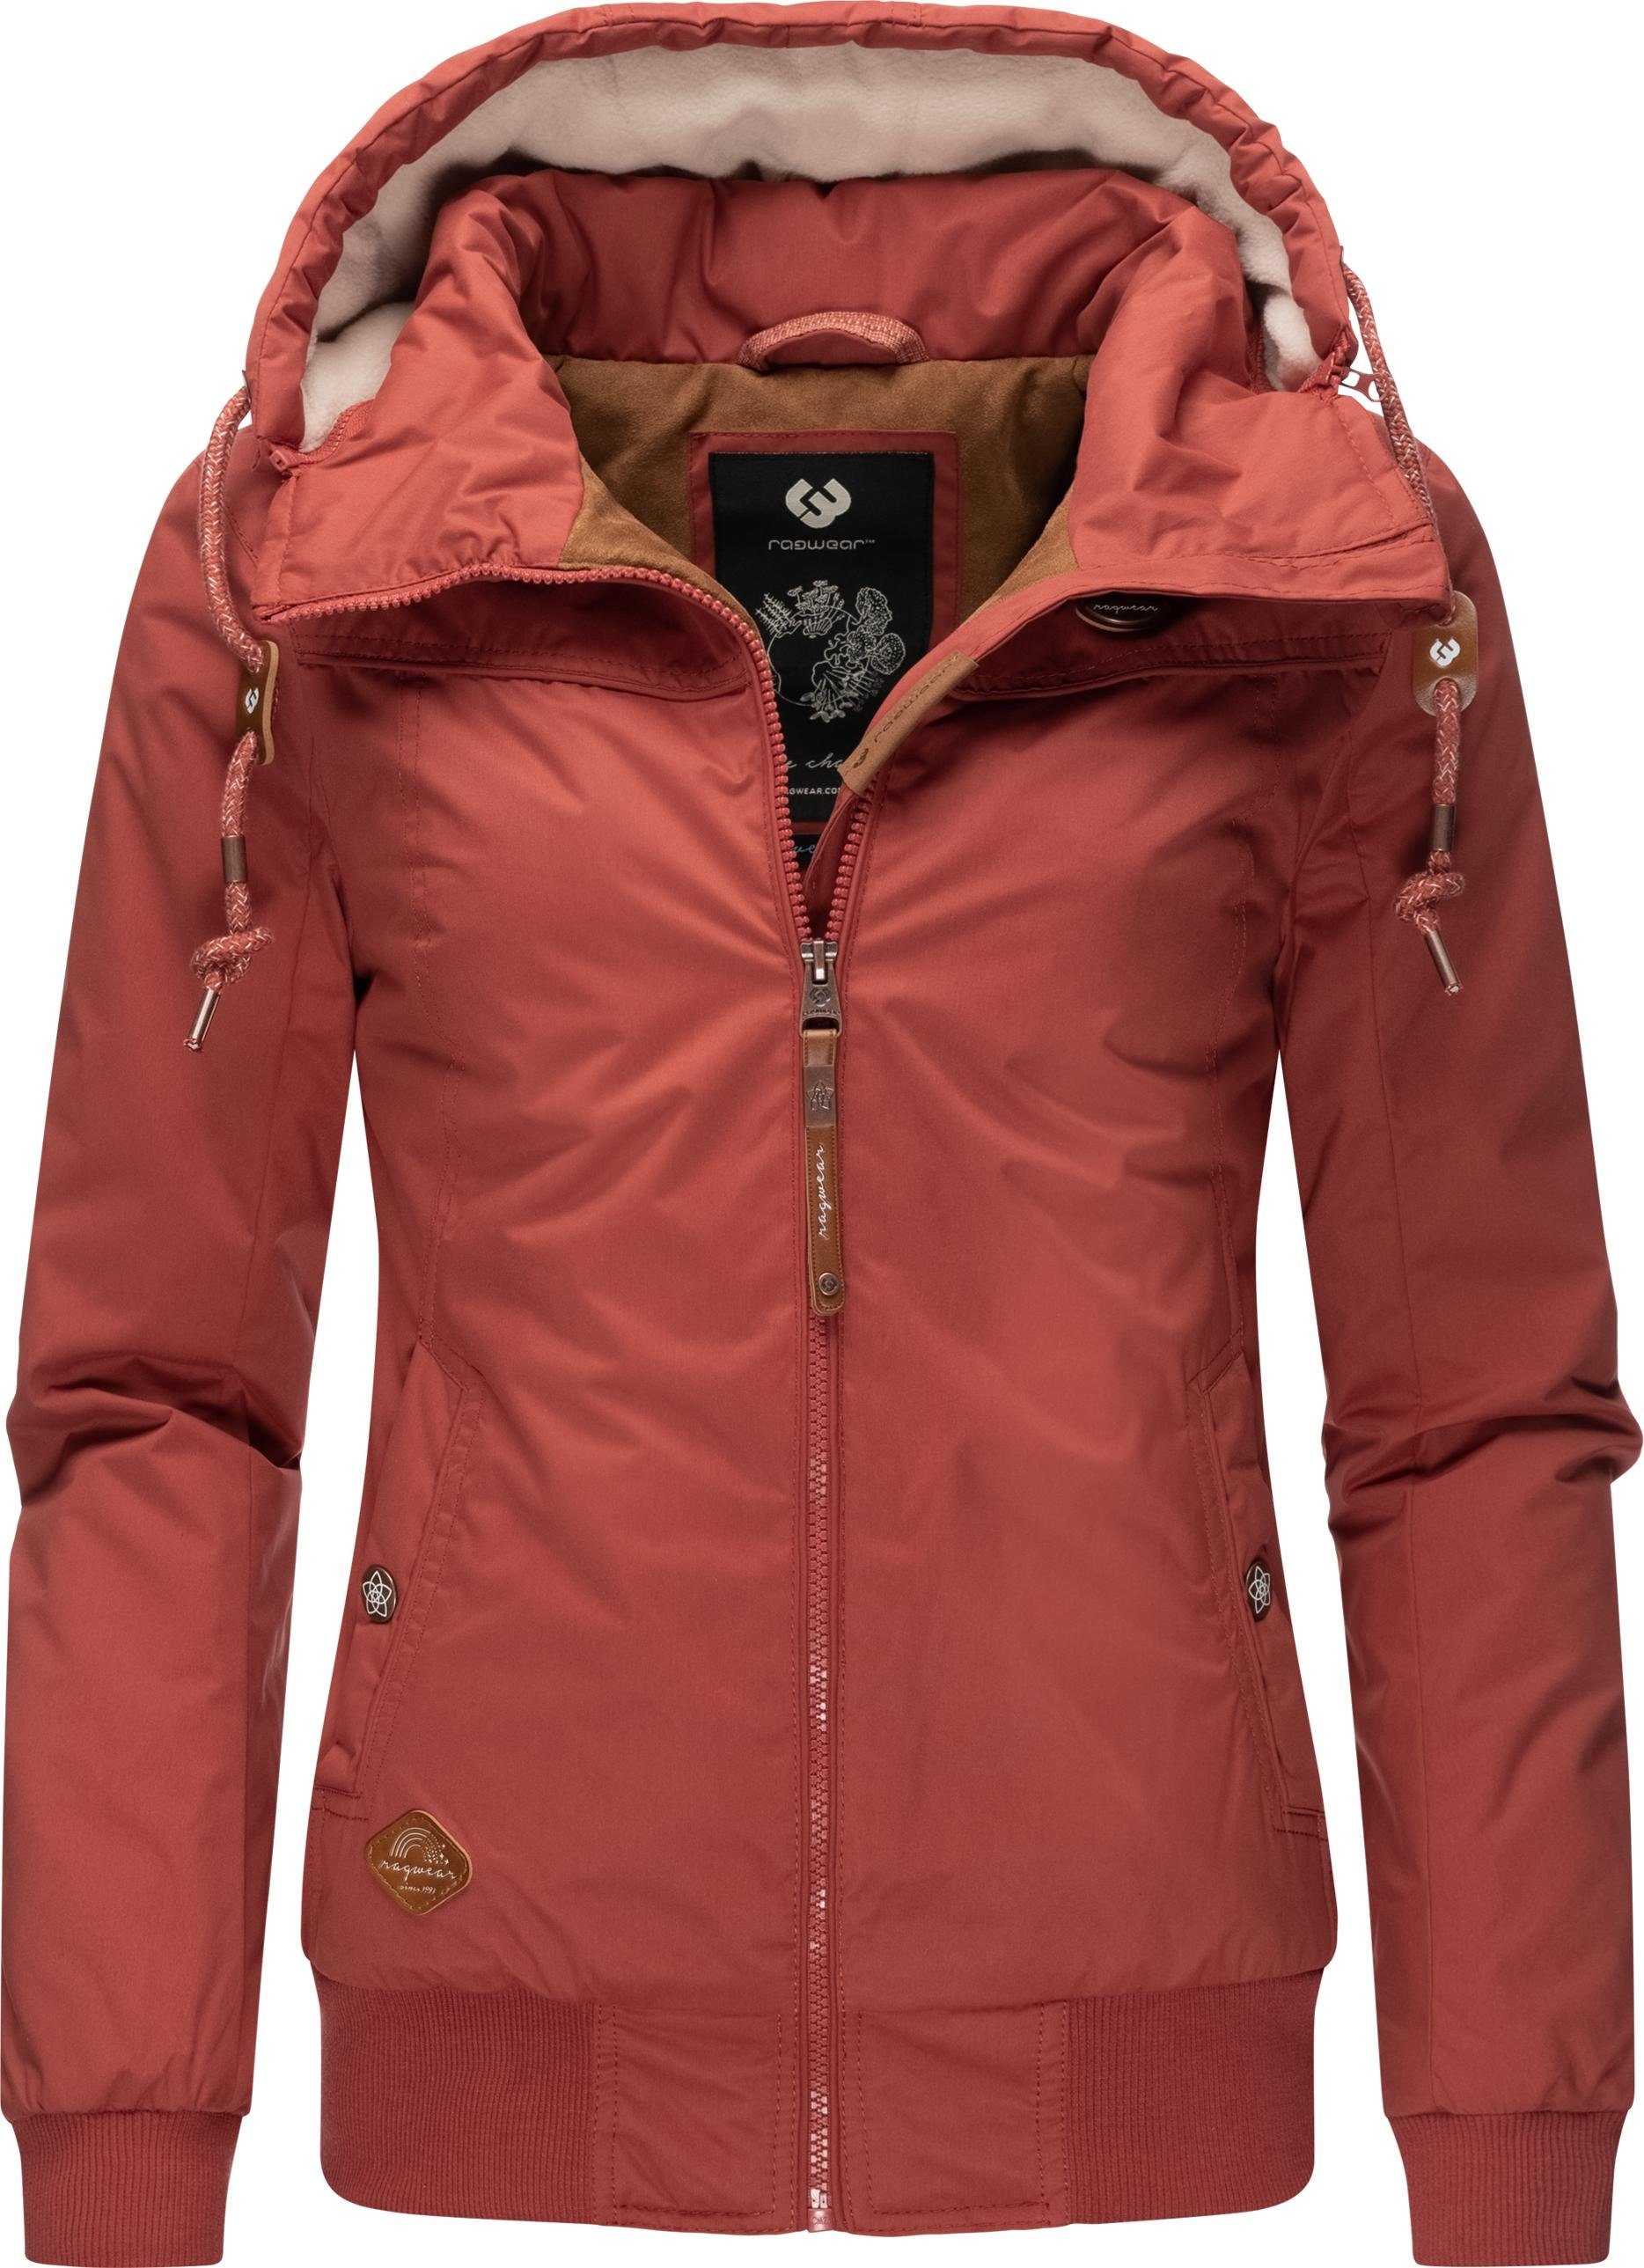 Ragwear Winterjacke Jotty Winter stylische Outdoorjacke mit abnehmbarer Kapuze rot